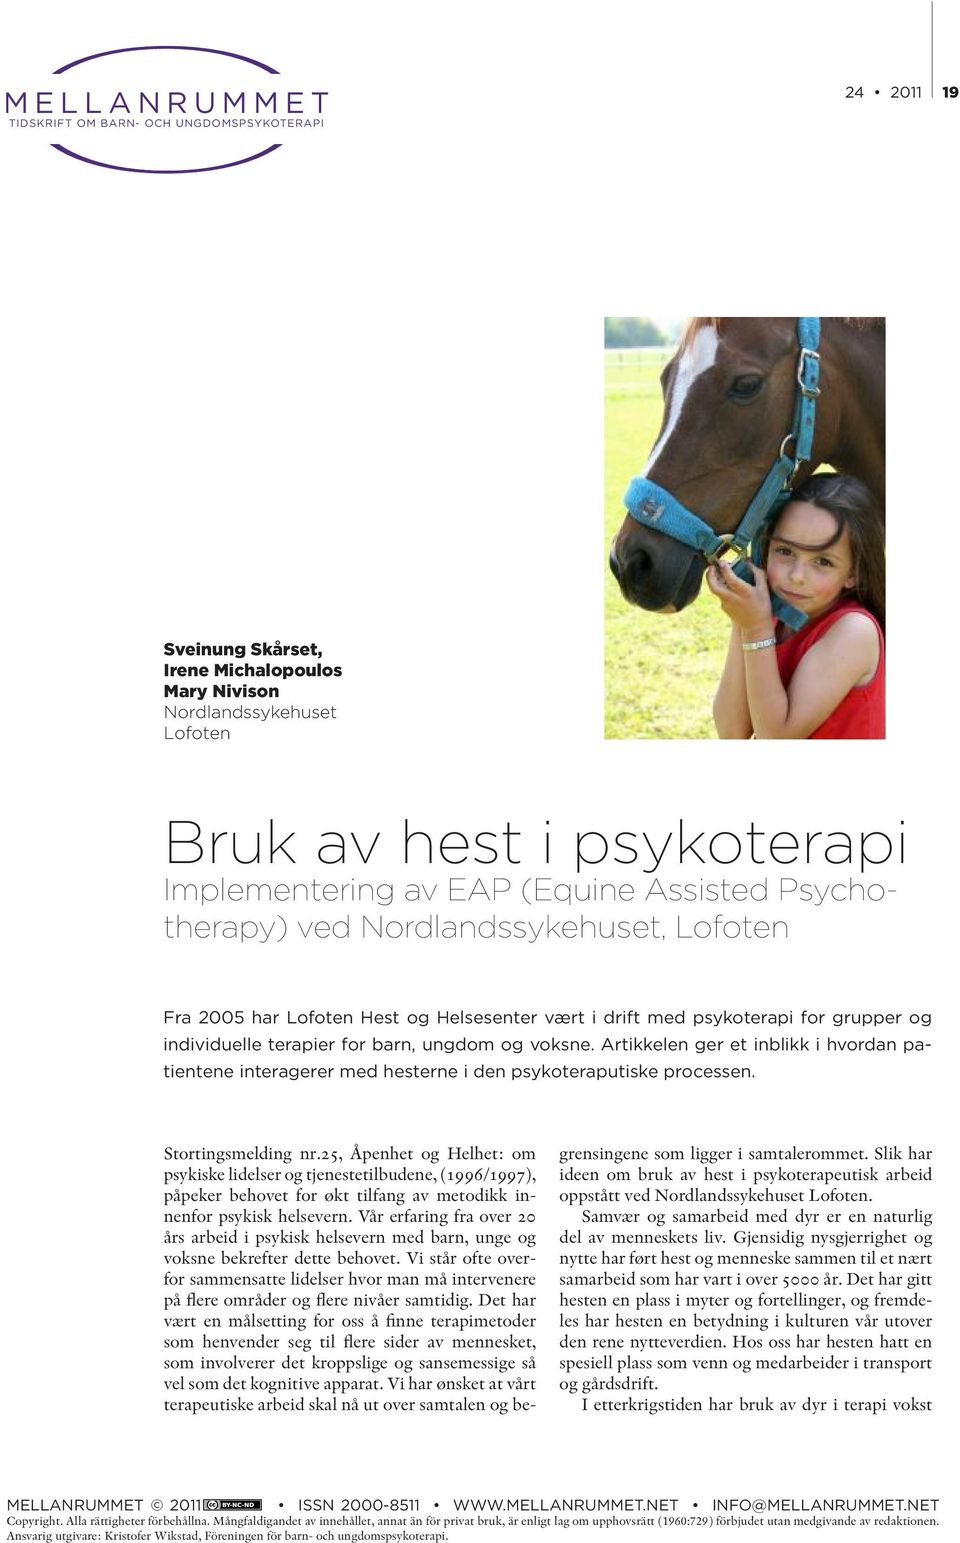 voksne. Artikkelen ger et inblikk i hvordan patientene interagerer med hesterne i den psykoteraputiske processen. Stortingsmelding nr.